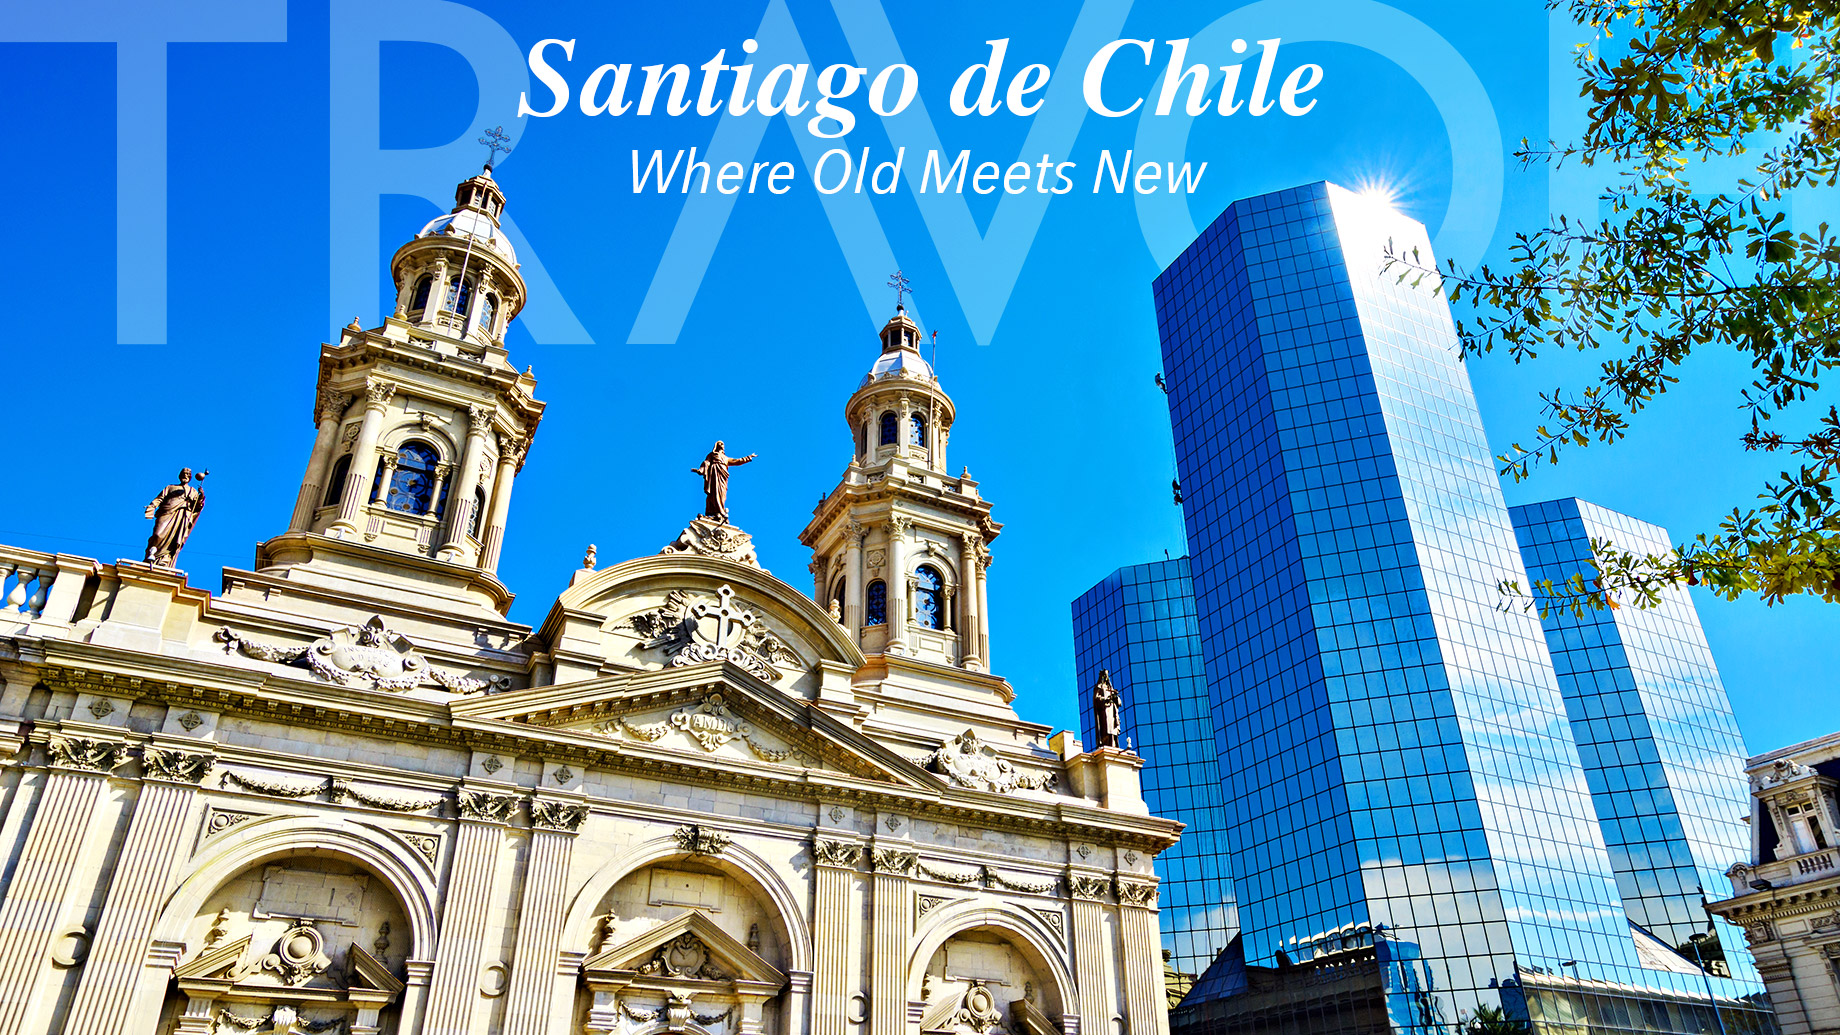 Santiago de Chile - Where Old Meets New